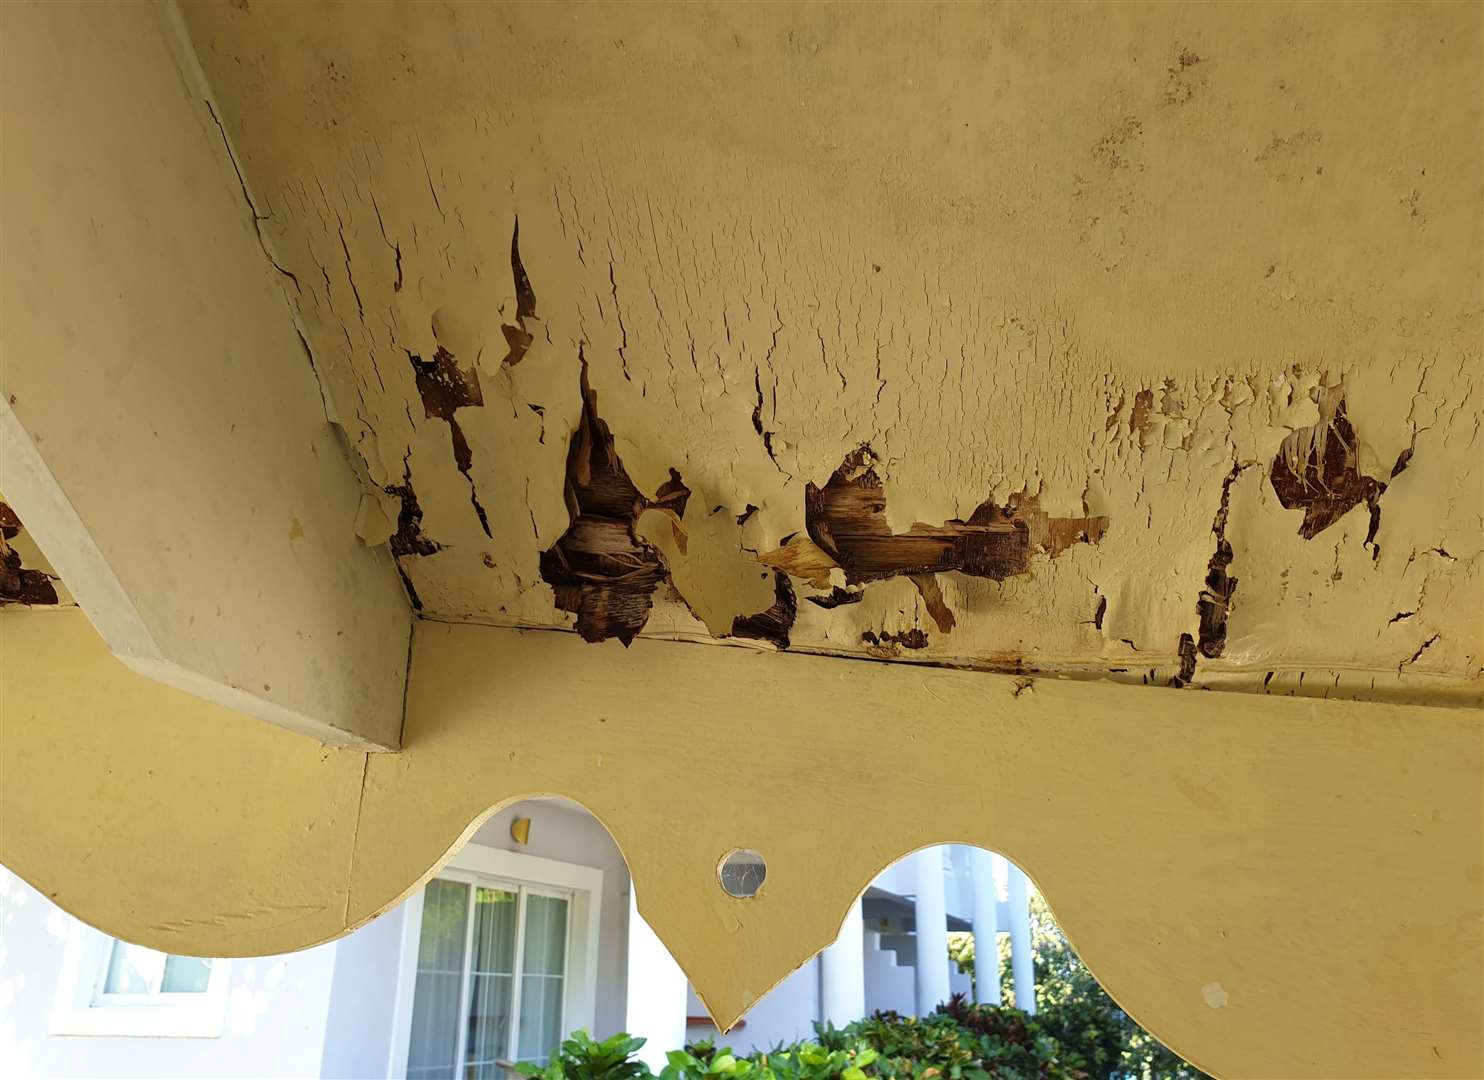 A verandah in apparent need of repair. Pic: Karl Lewis-Law